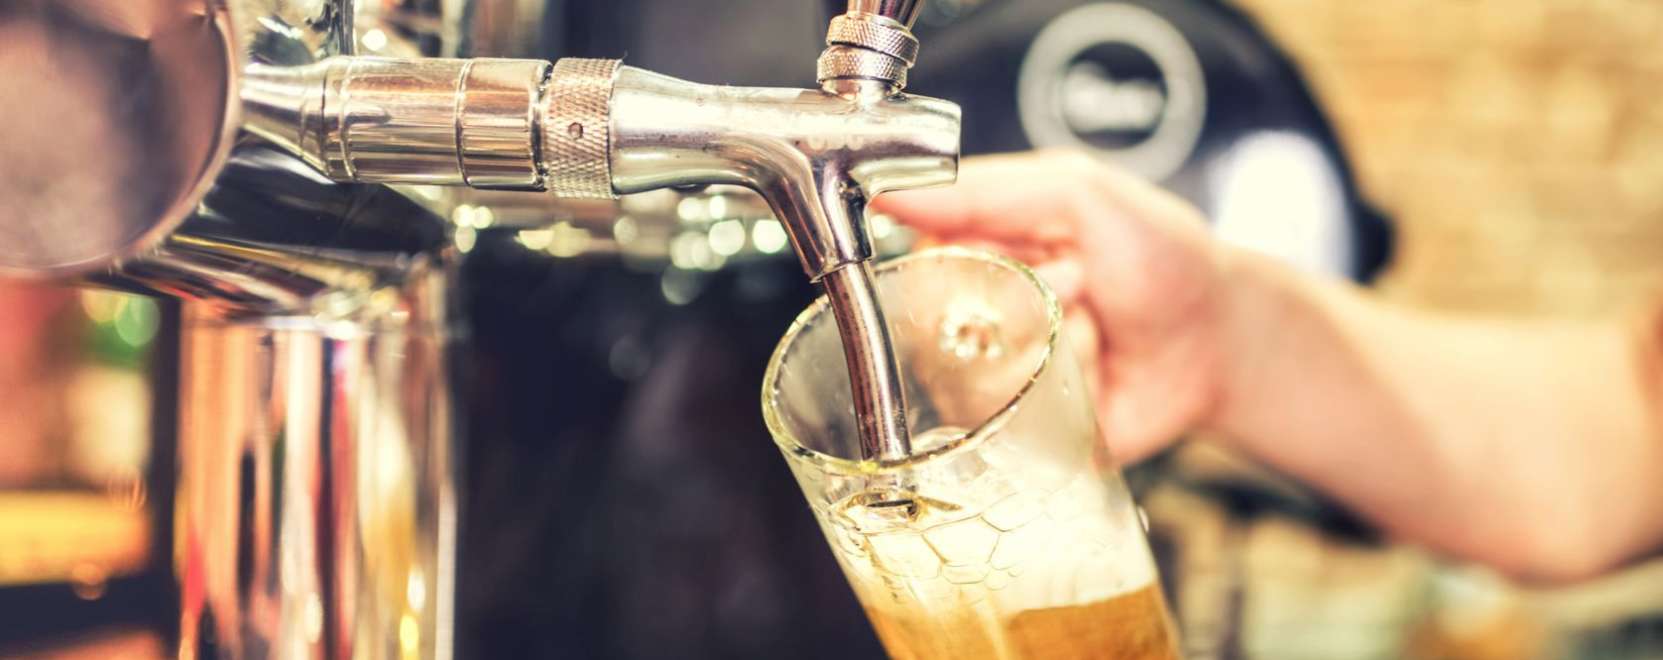 Londoni bár teszteli az önkiszolgáló sörcsapot